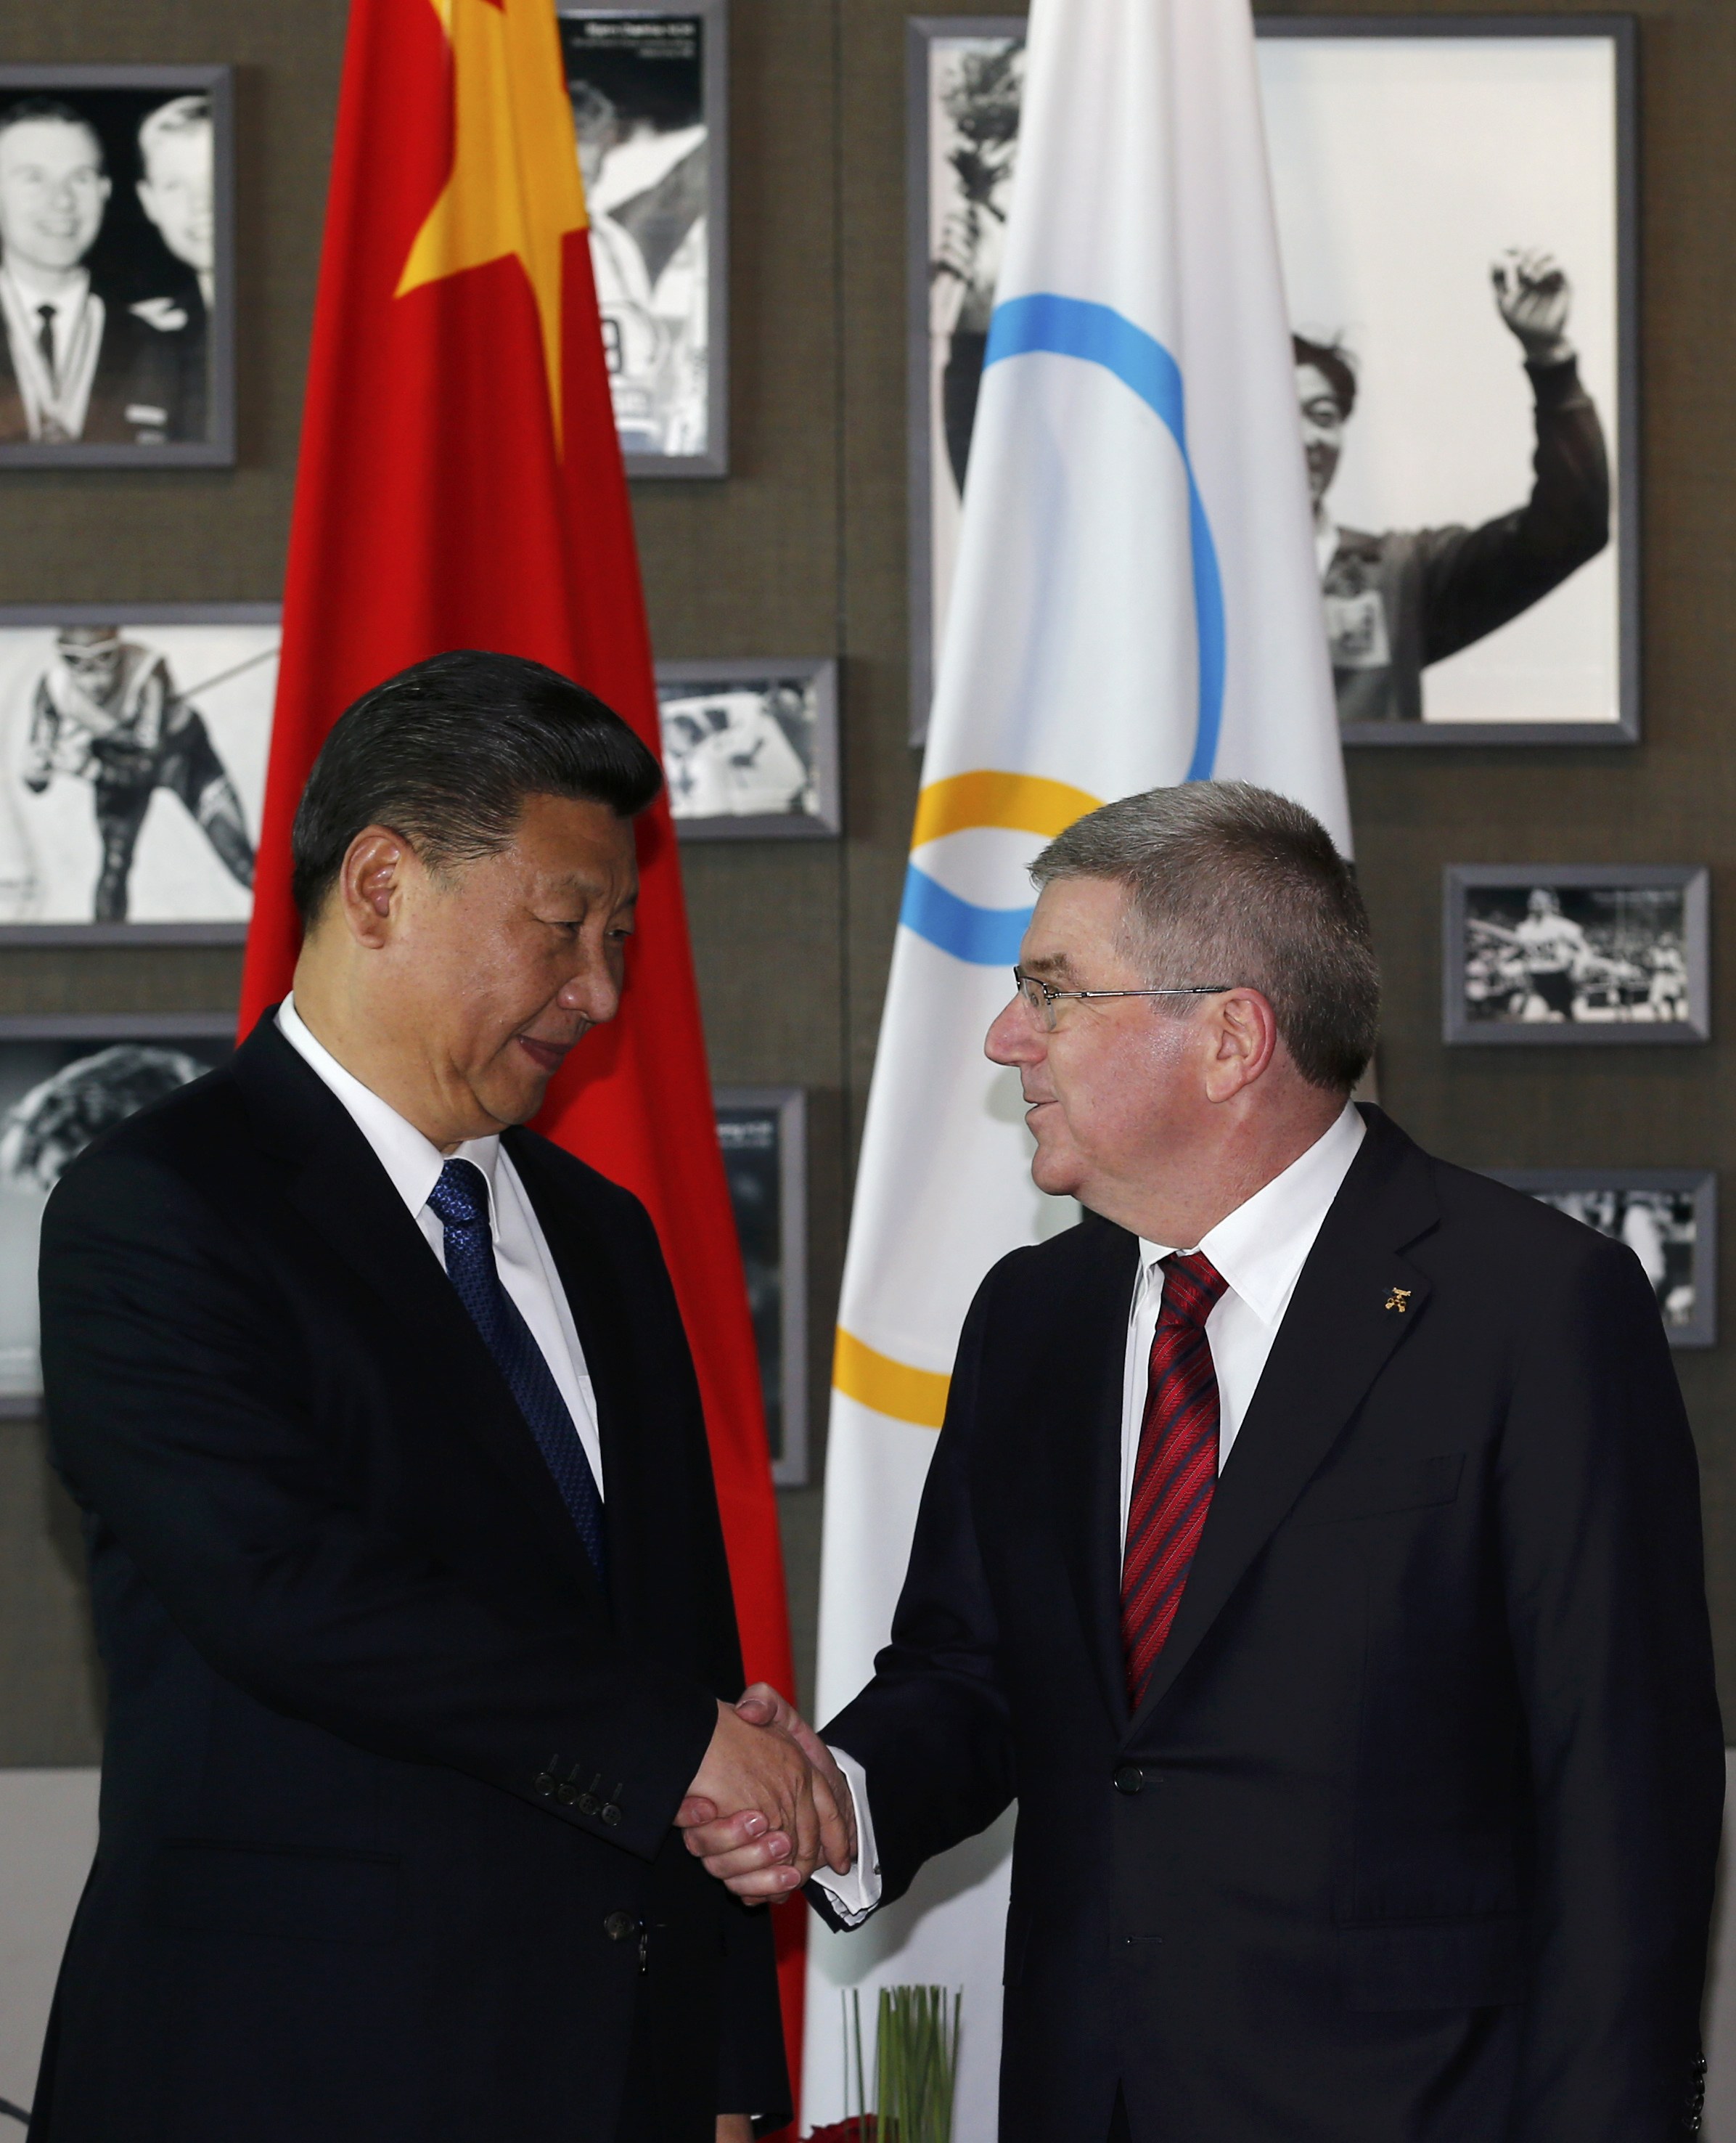 الرئيس الصينى يصافح رئيس اللجنة الأوليمبية الدولية خلال زيارته فى سويسرا